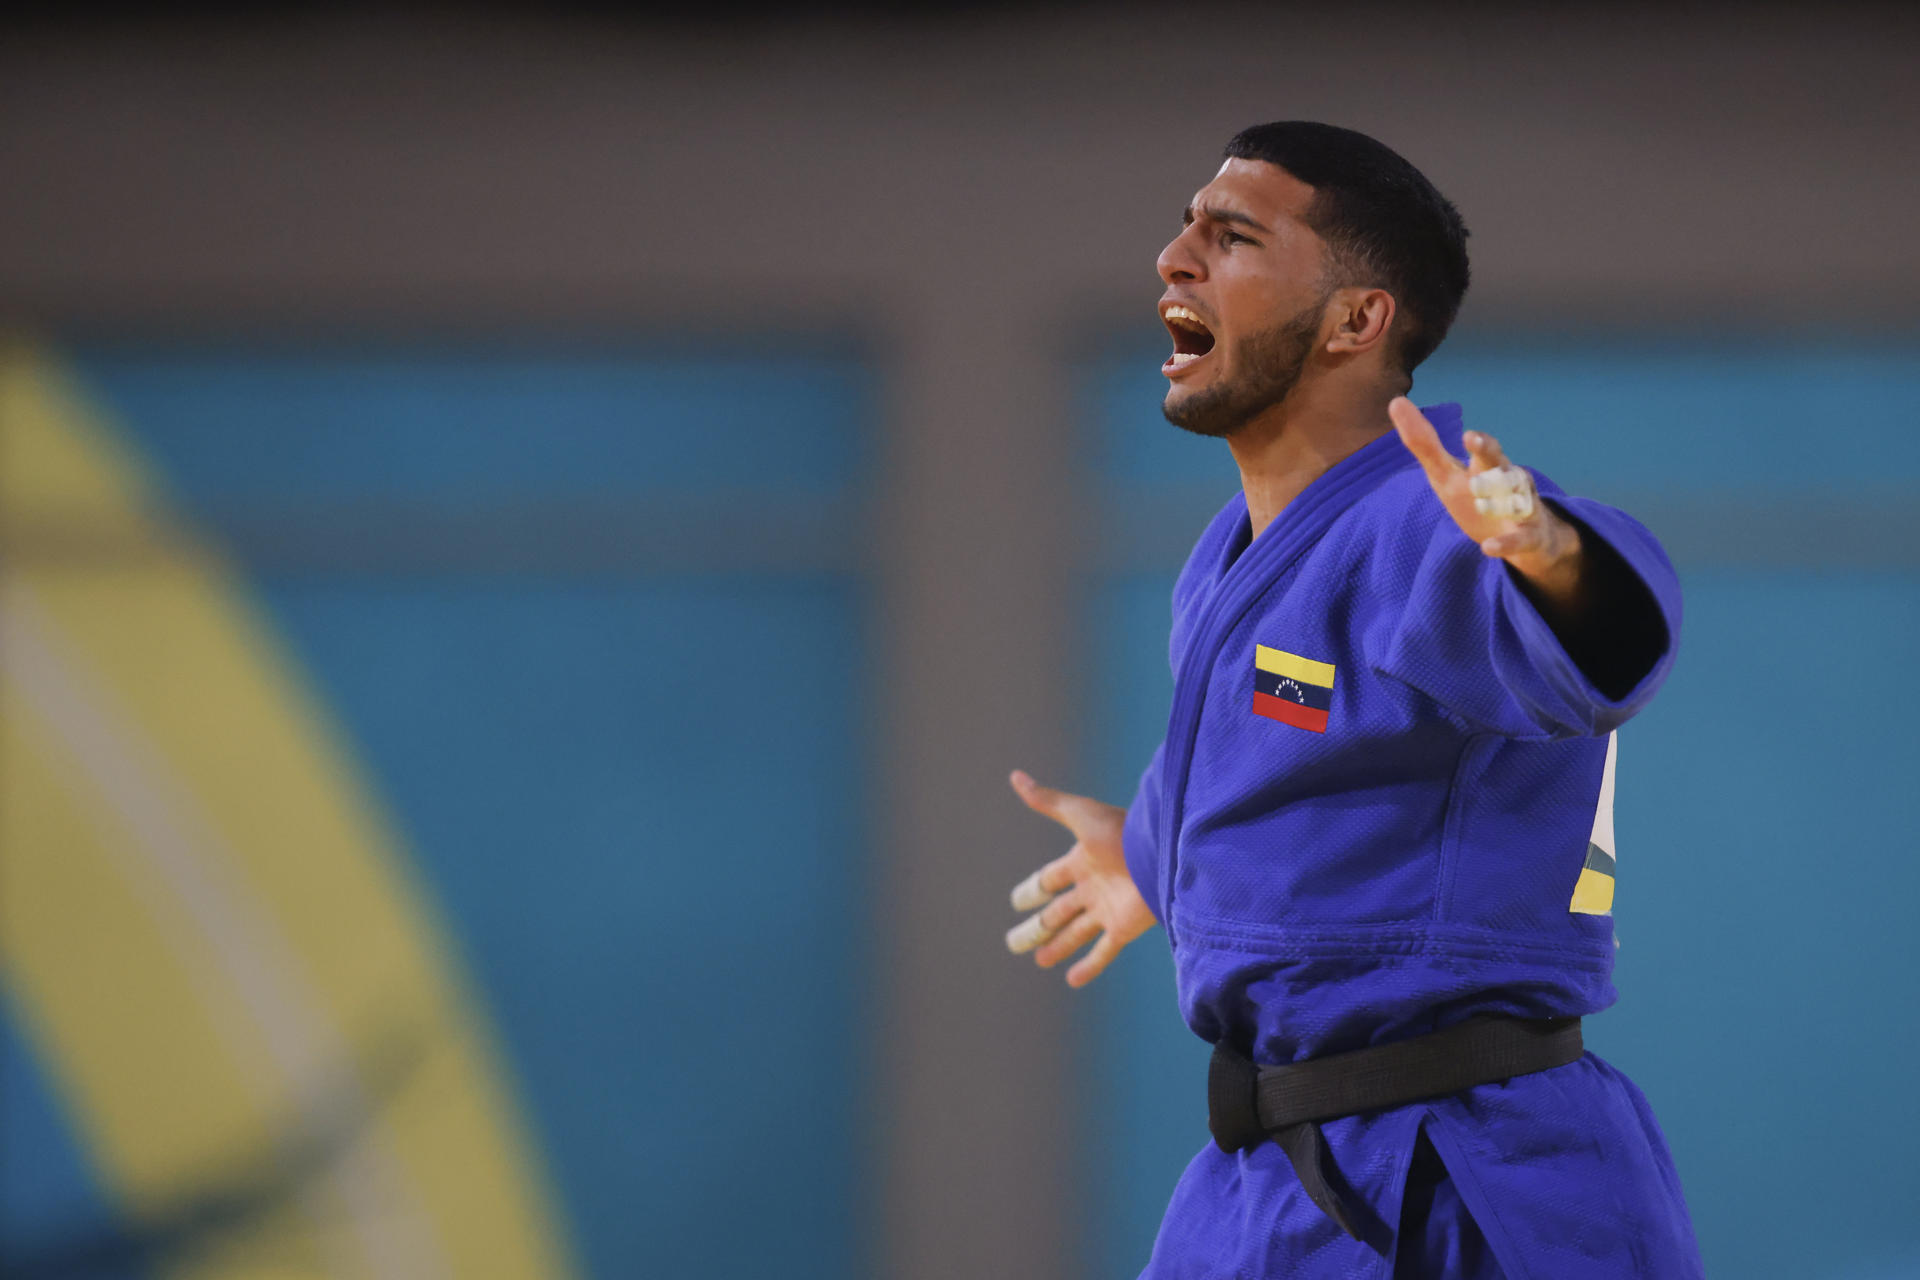 “Estamos en la ruta”: Willis García, el judoca de oro de Venezuela, mira hacia París 2024